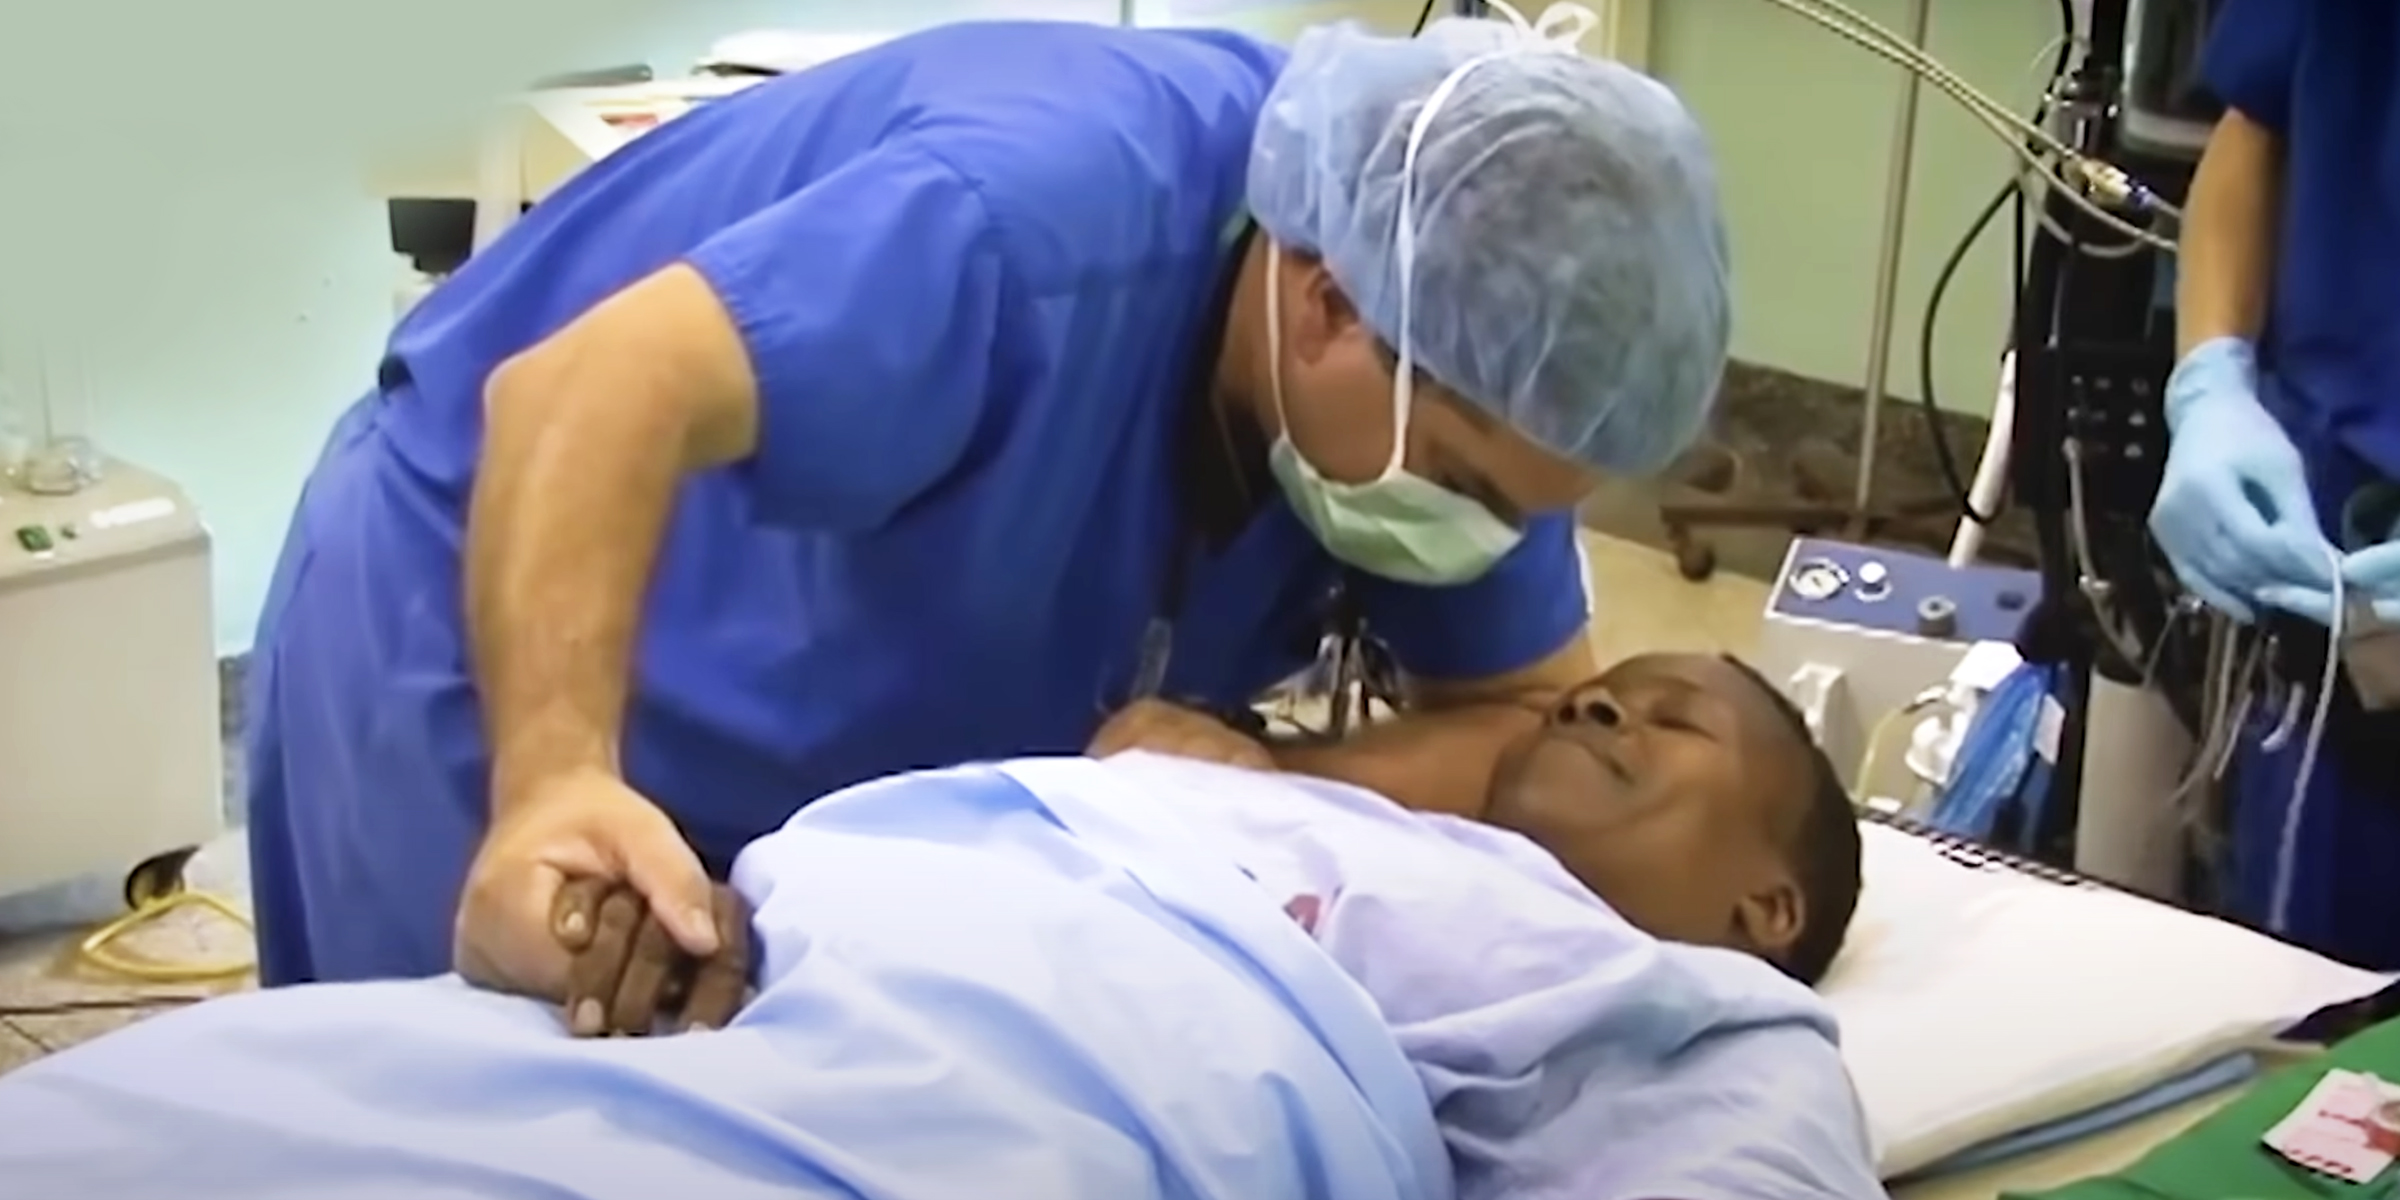 Le Dr Michael Haglund en salle d'opération avec un patient | Source : youtube.com/The700Club